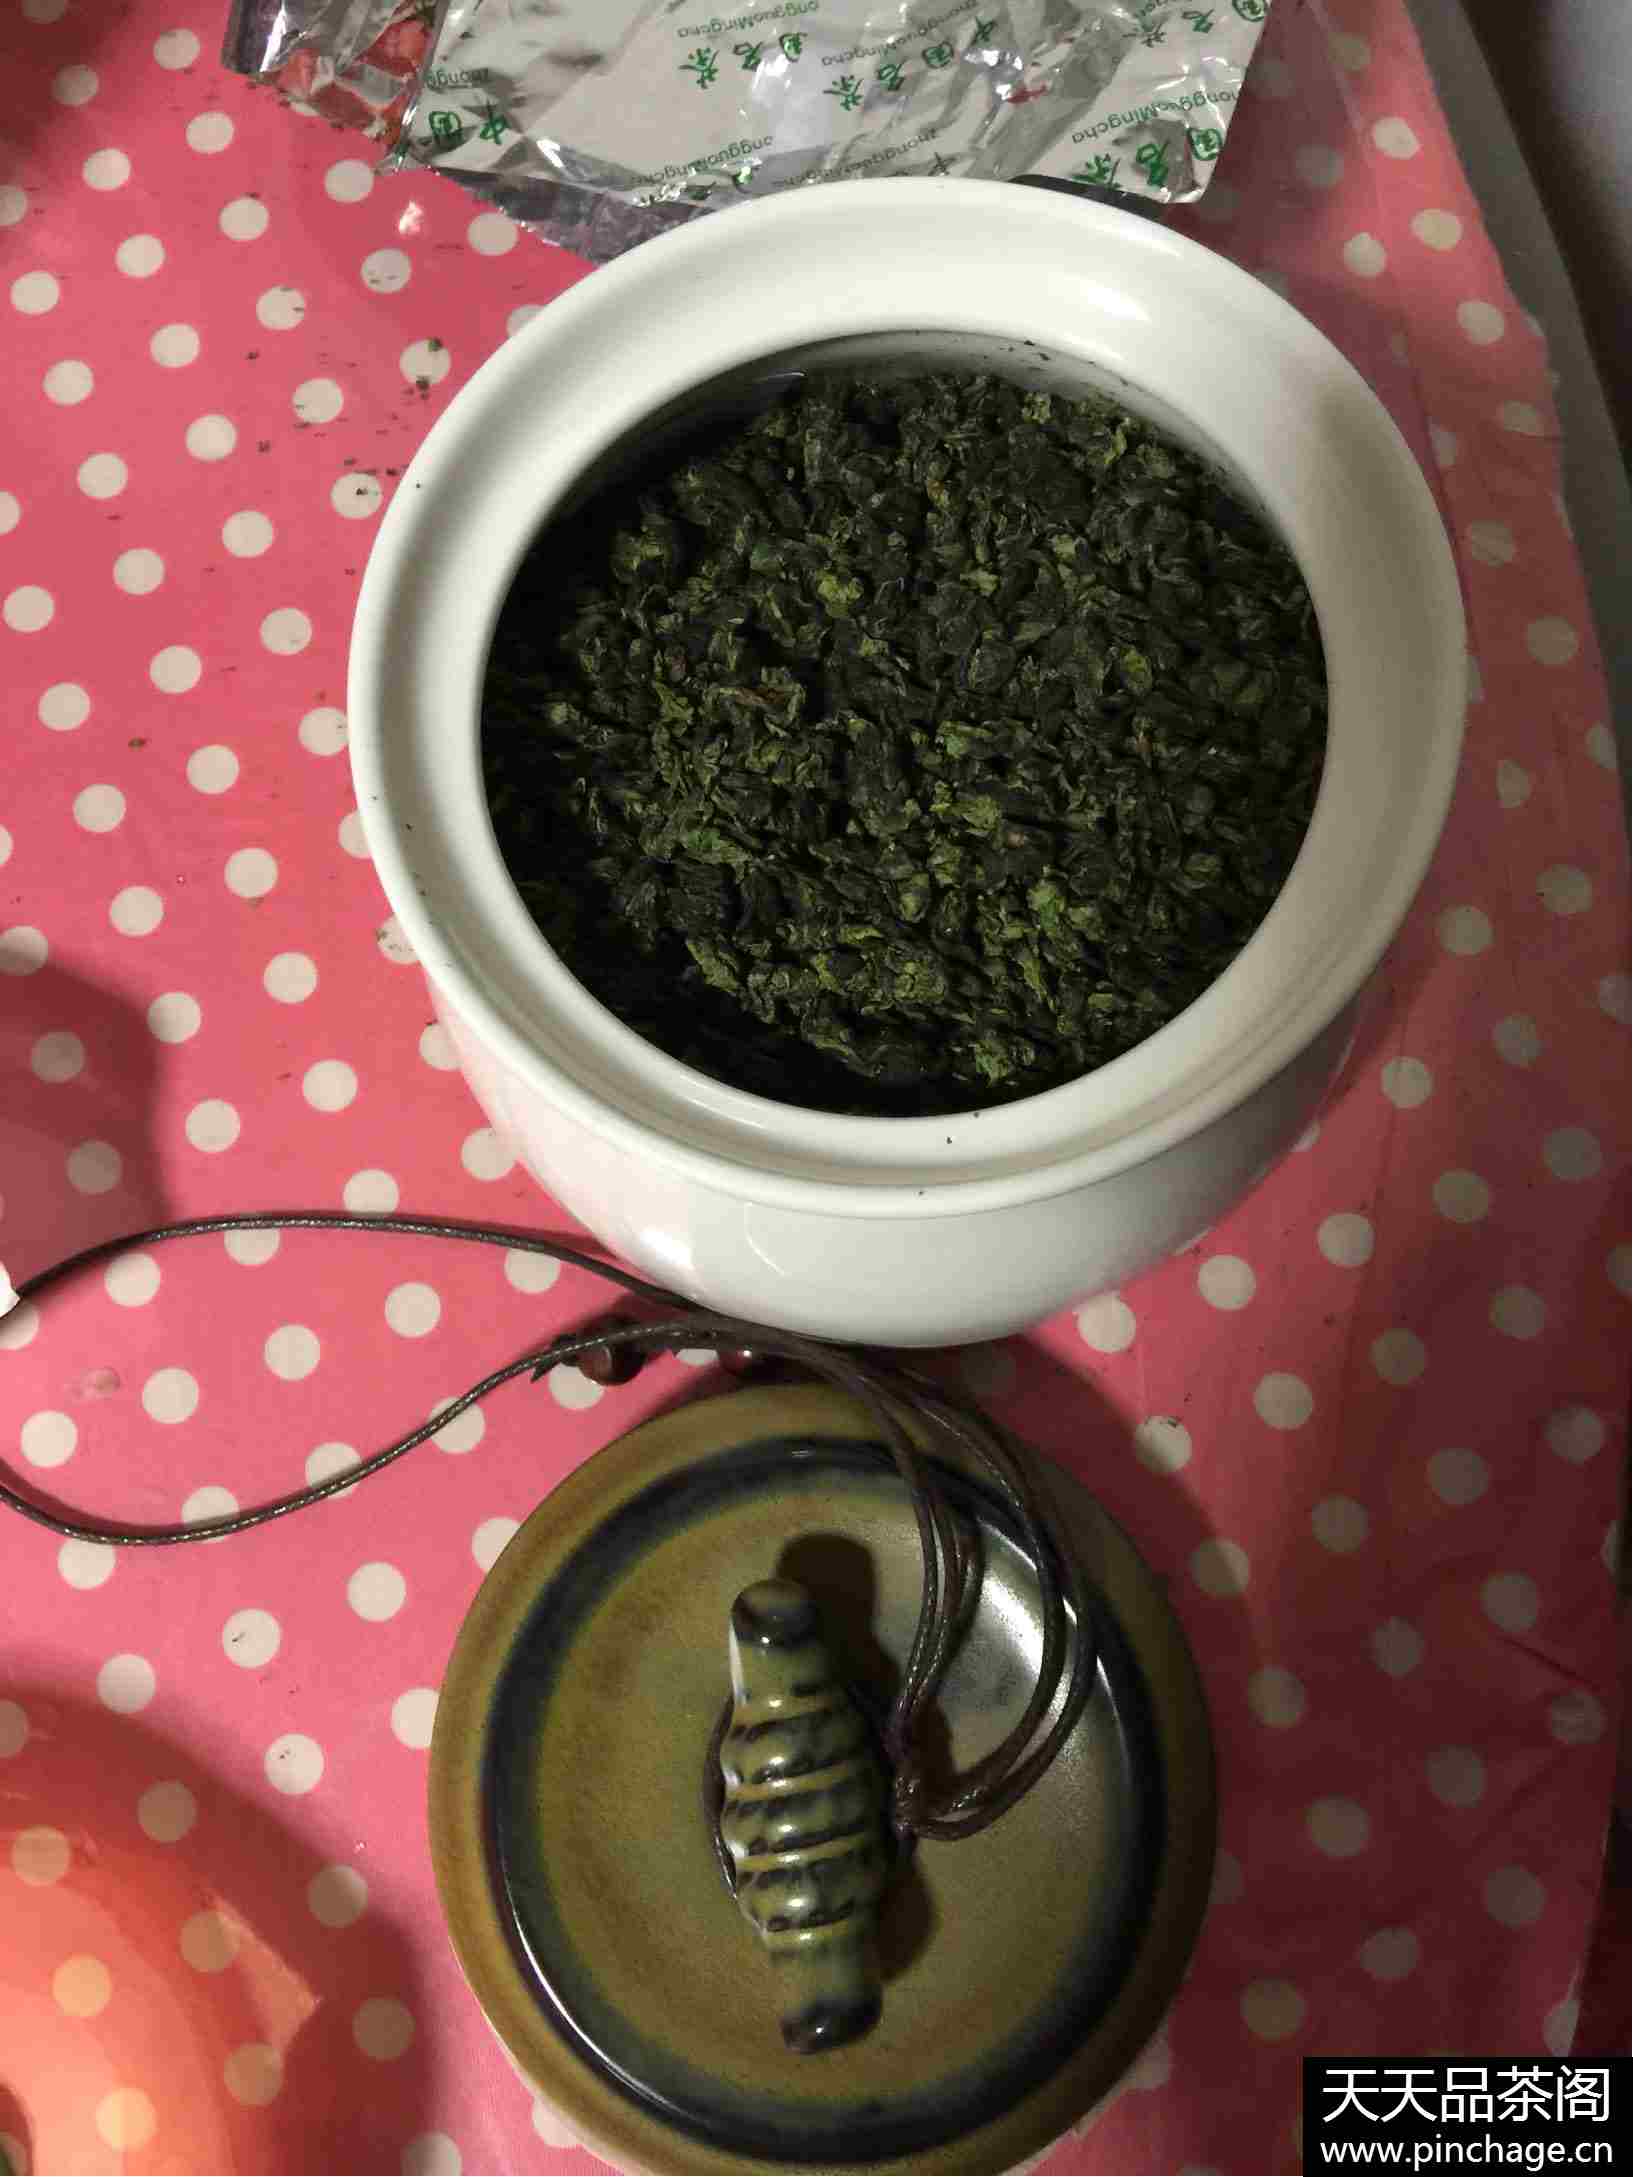 佩云 铁观音茶叶 陶瓷罐装